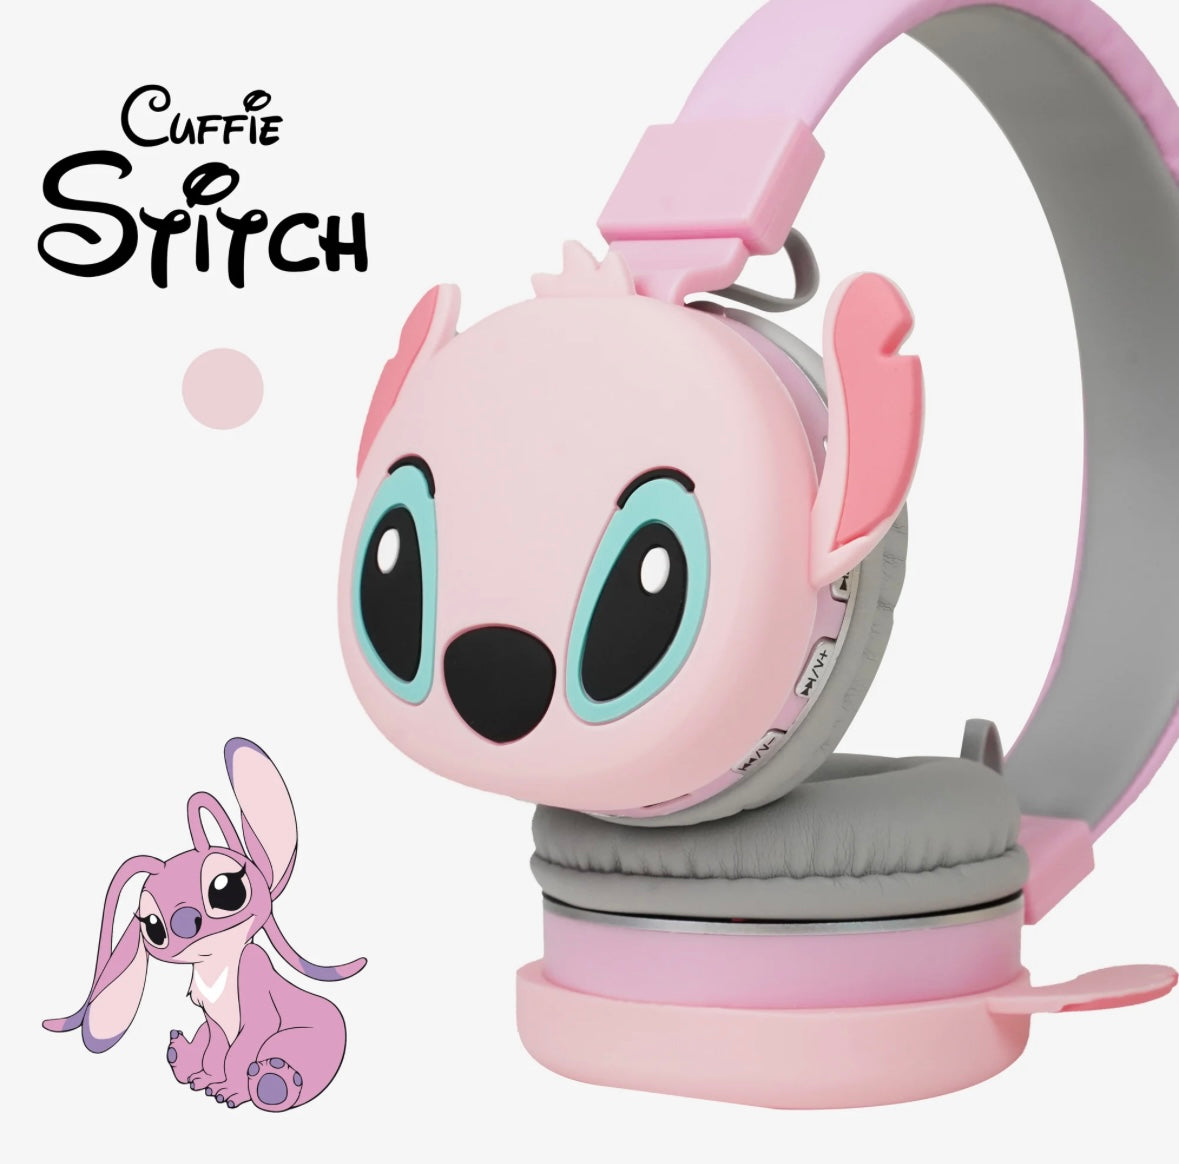 Cuffie Bluetooth Di Stitch Per Bambini, Cuffie Con Esclusione Del Rumore Esterno